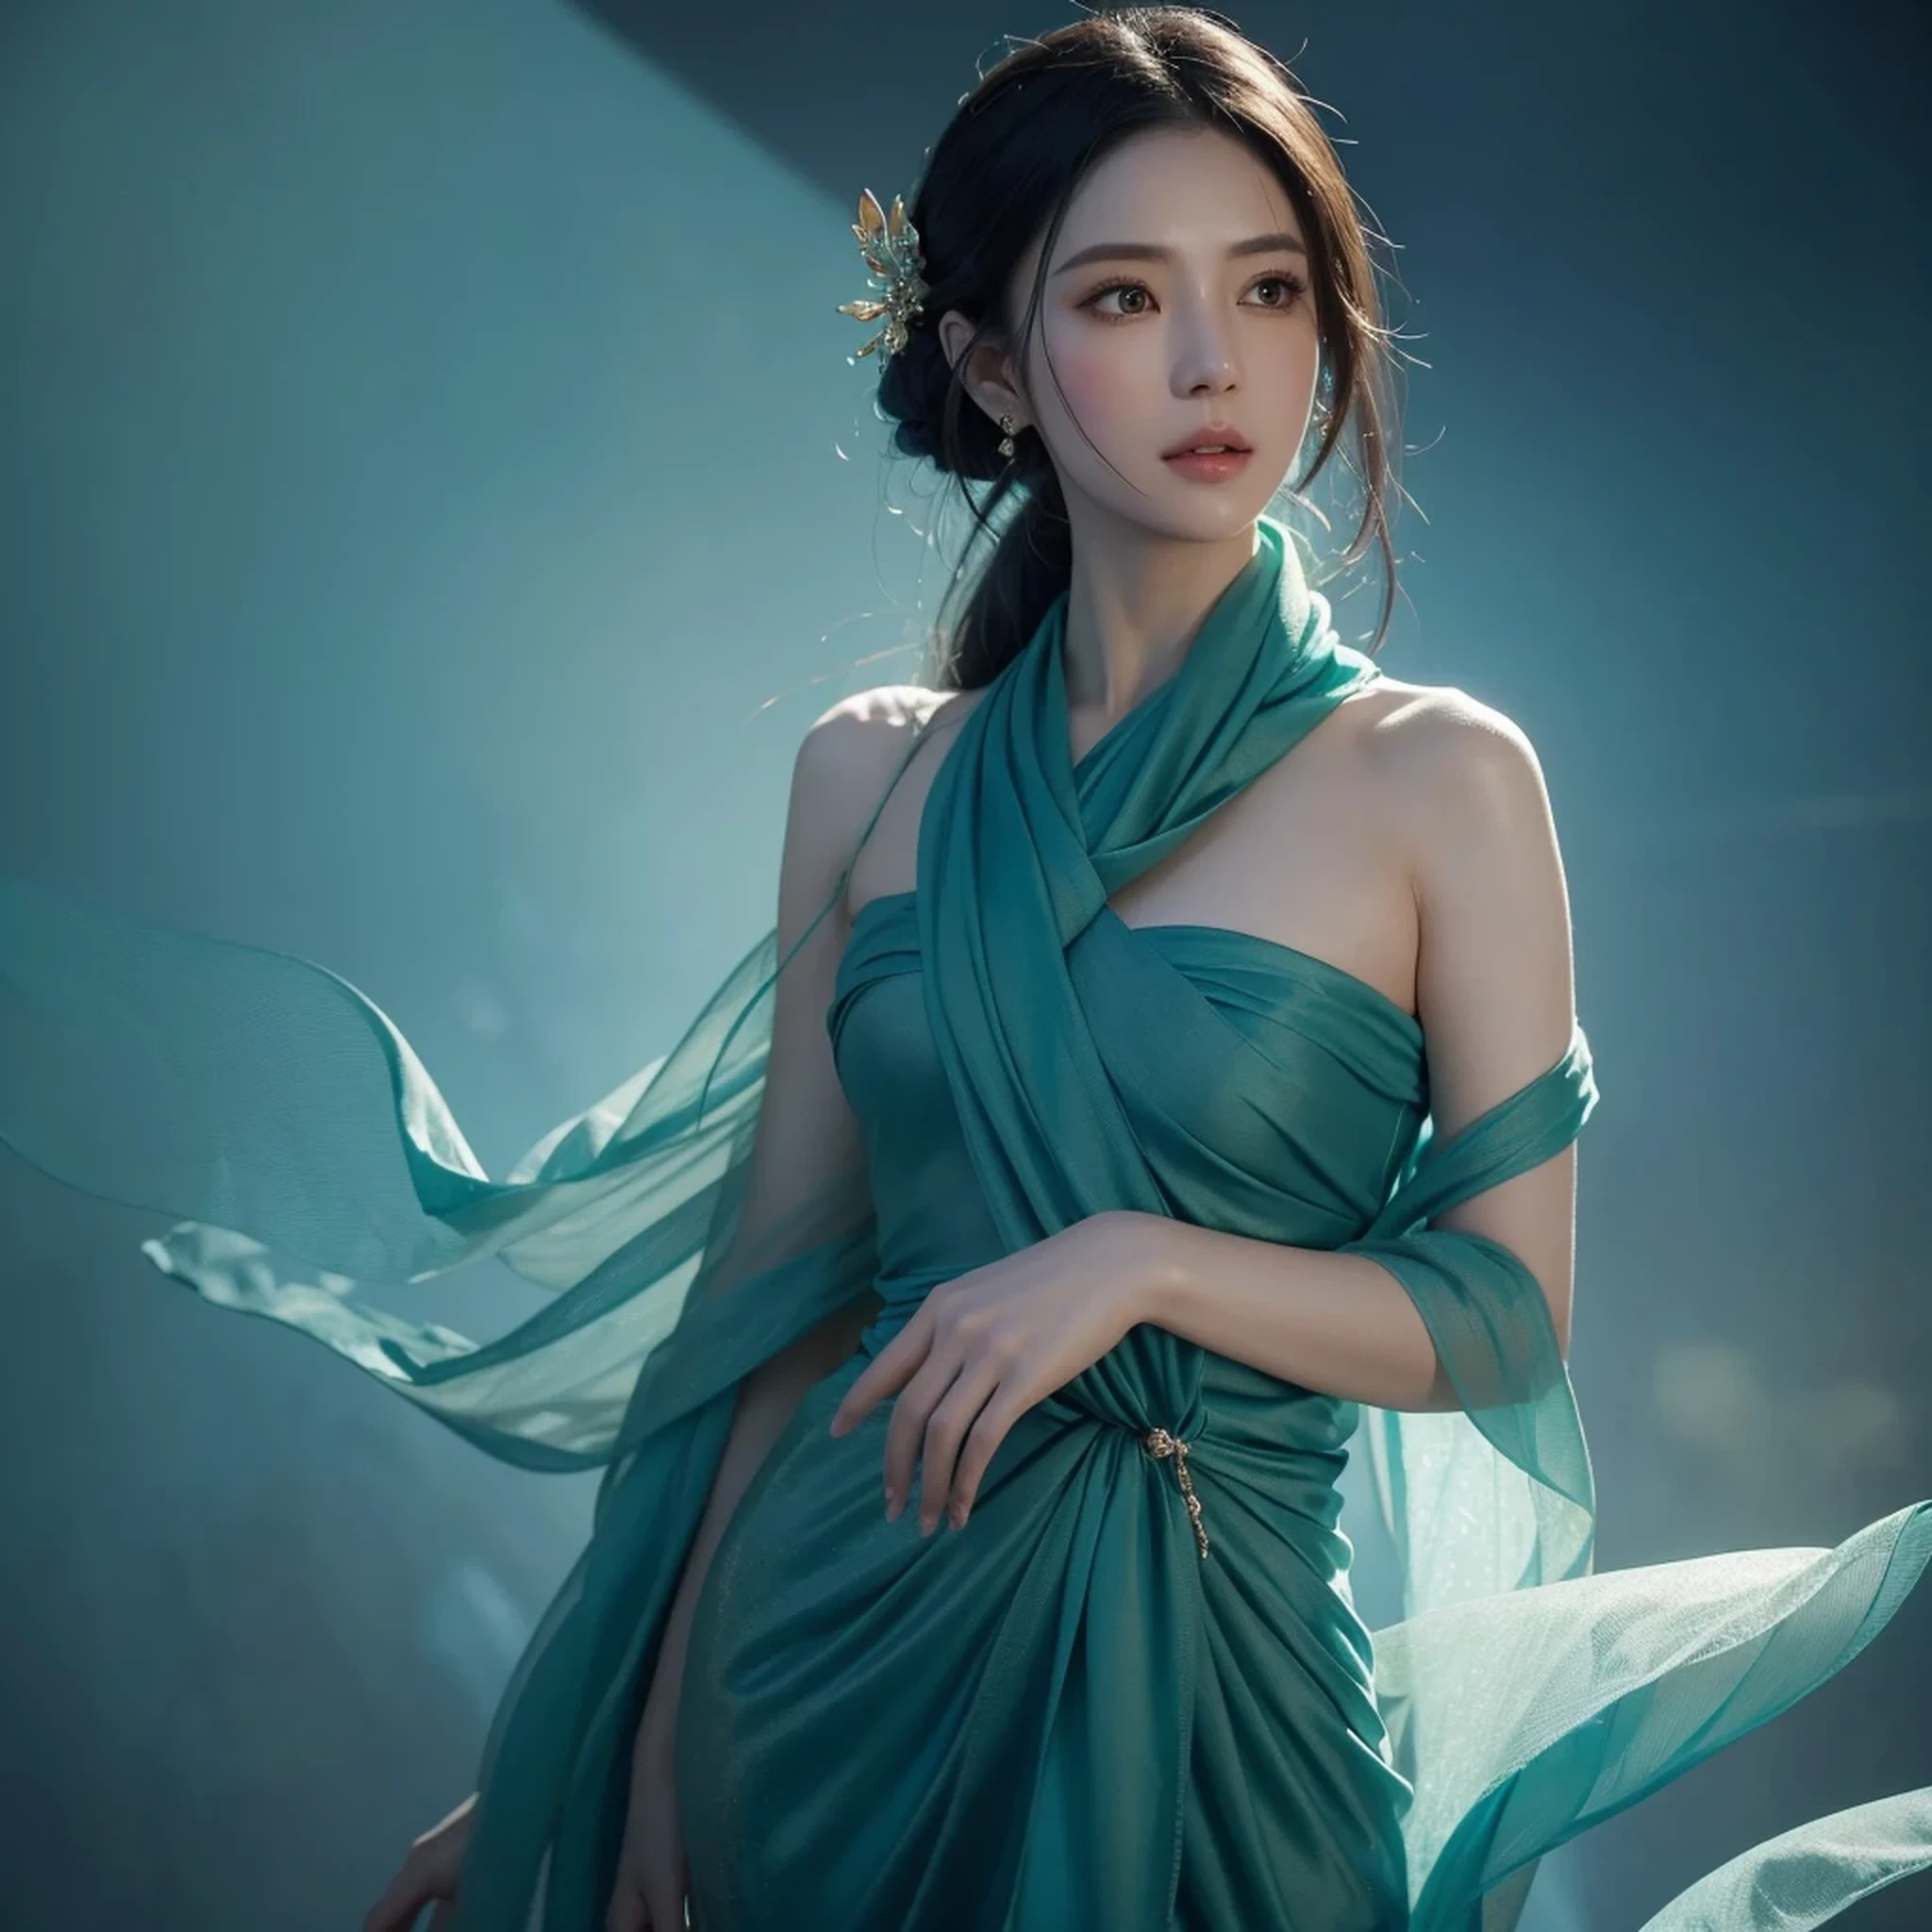 eine Frau in einem blauen Kleid mit einem langen grünen Schal, schöne Charaktermalerei, eine wunderschöne Fantasiekaiserin, von Yang J, style of artgerm, Artgerm and Ruan Jia, extrem detailliertes Artgerm, trending artgerm, artgerm. Anime-Illustration, ruan jia and artgerm, inspiriert von Pu Hua, artgerm detailliert